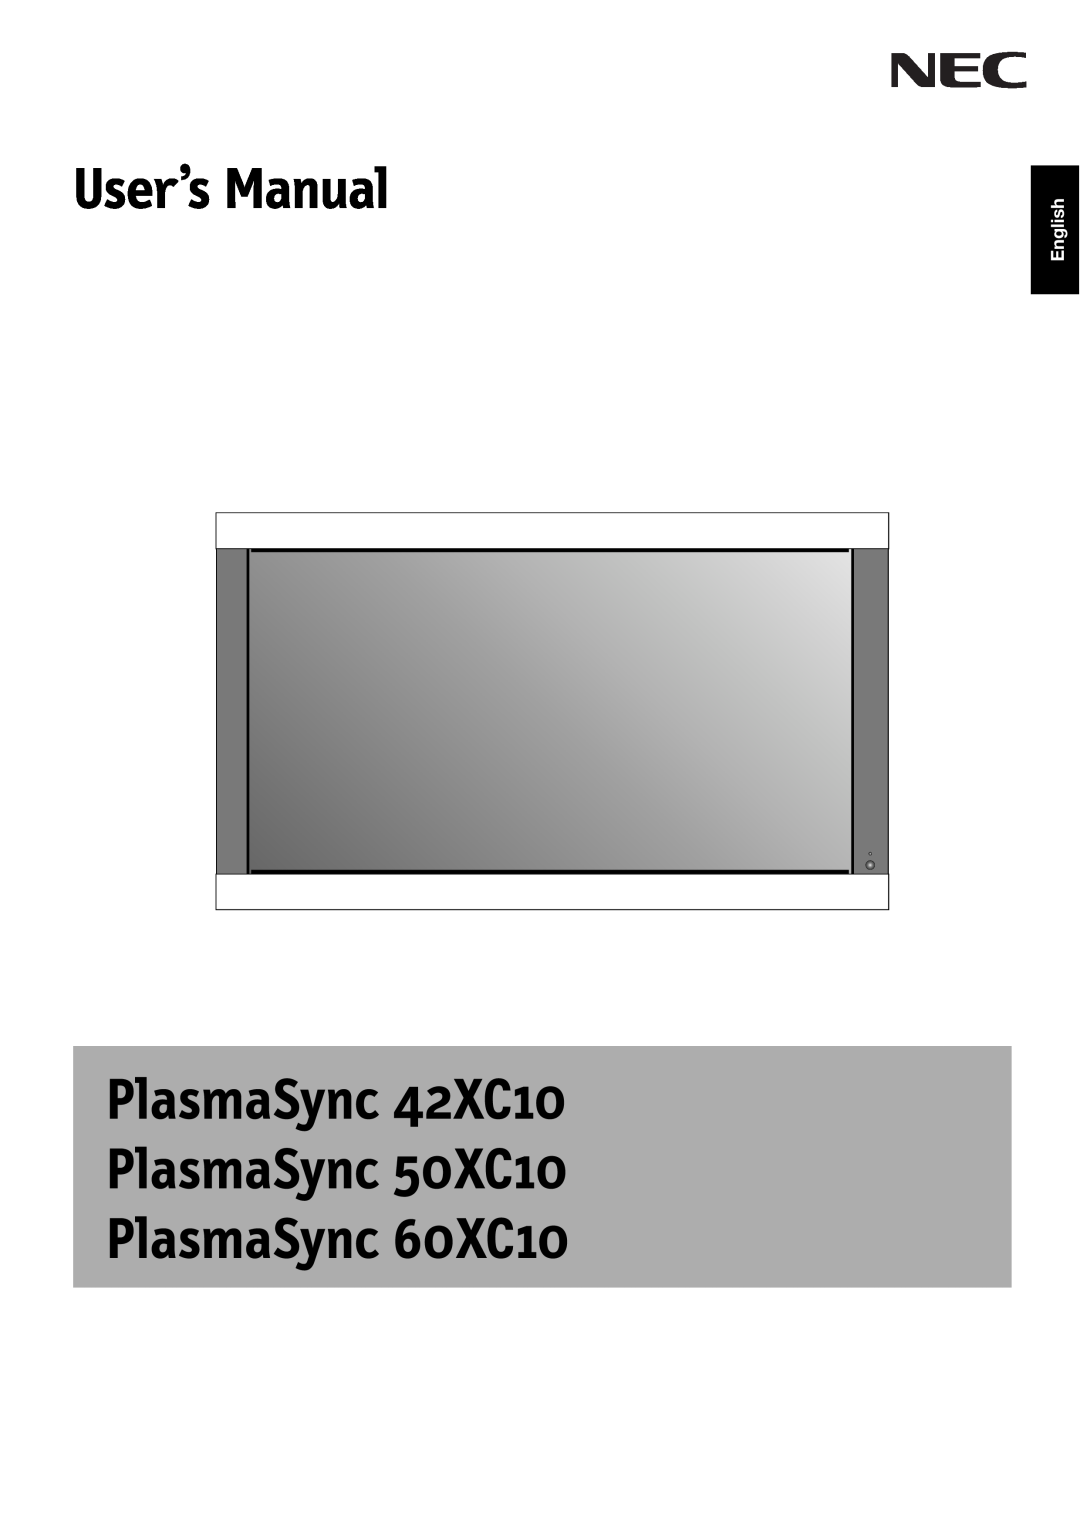 NEC user manual User’s Manual, PlasmaSync 42XC10 PlasmaSync 50XC10 PlasmaSync 60XC10, English 